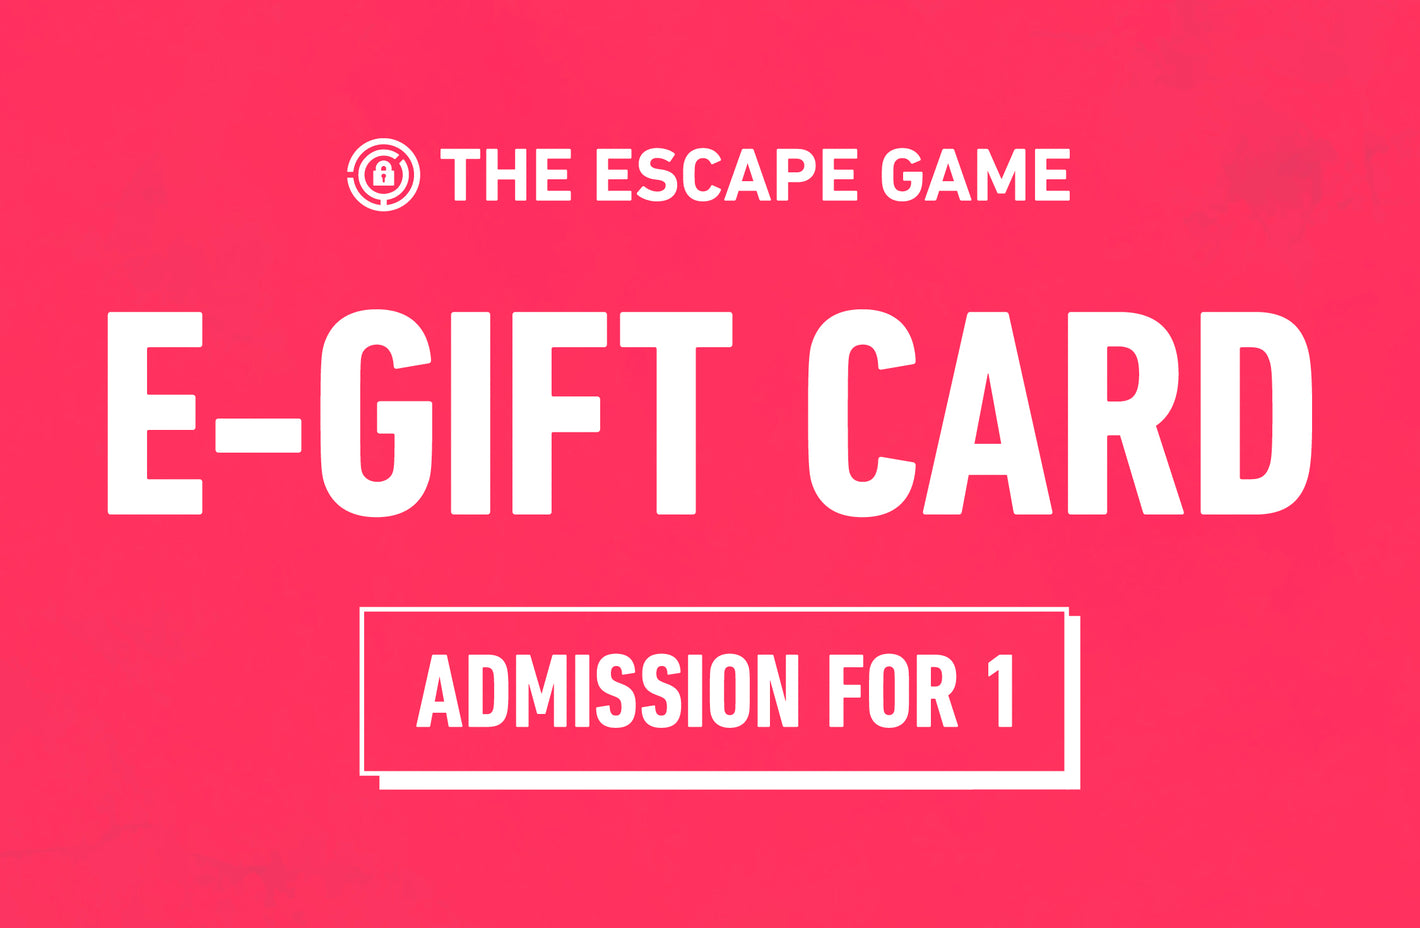 Digital Gift Card - 1 player — Somewhere Secret Escape Room Fort Collins